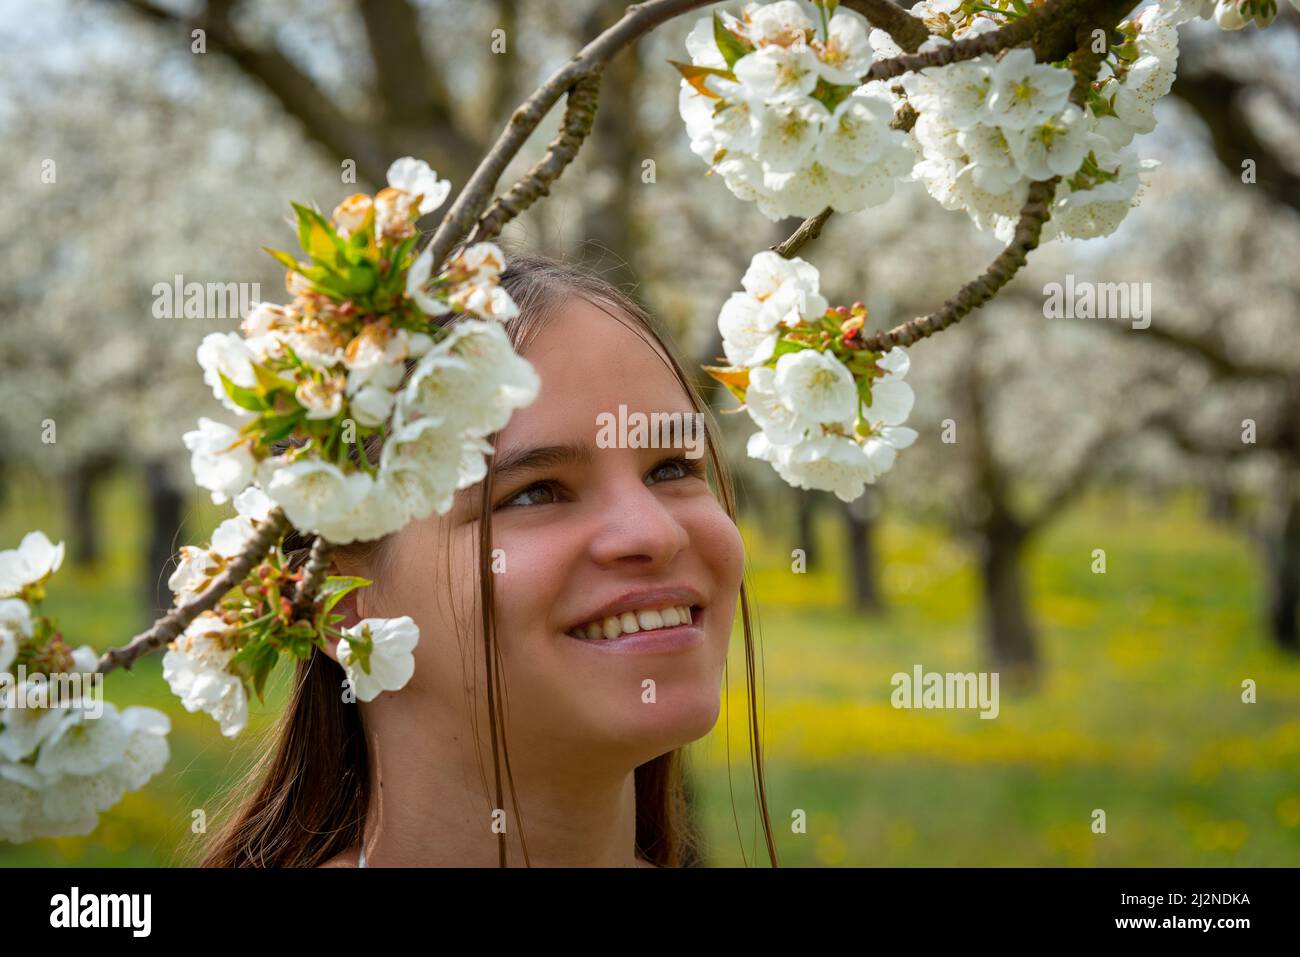 Portrait d'une jeune femme vêtue d'une robe blanche dans un verger de cerisier avec arbres en fleur. Image printemps été .provence , France . Banque D'Images